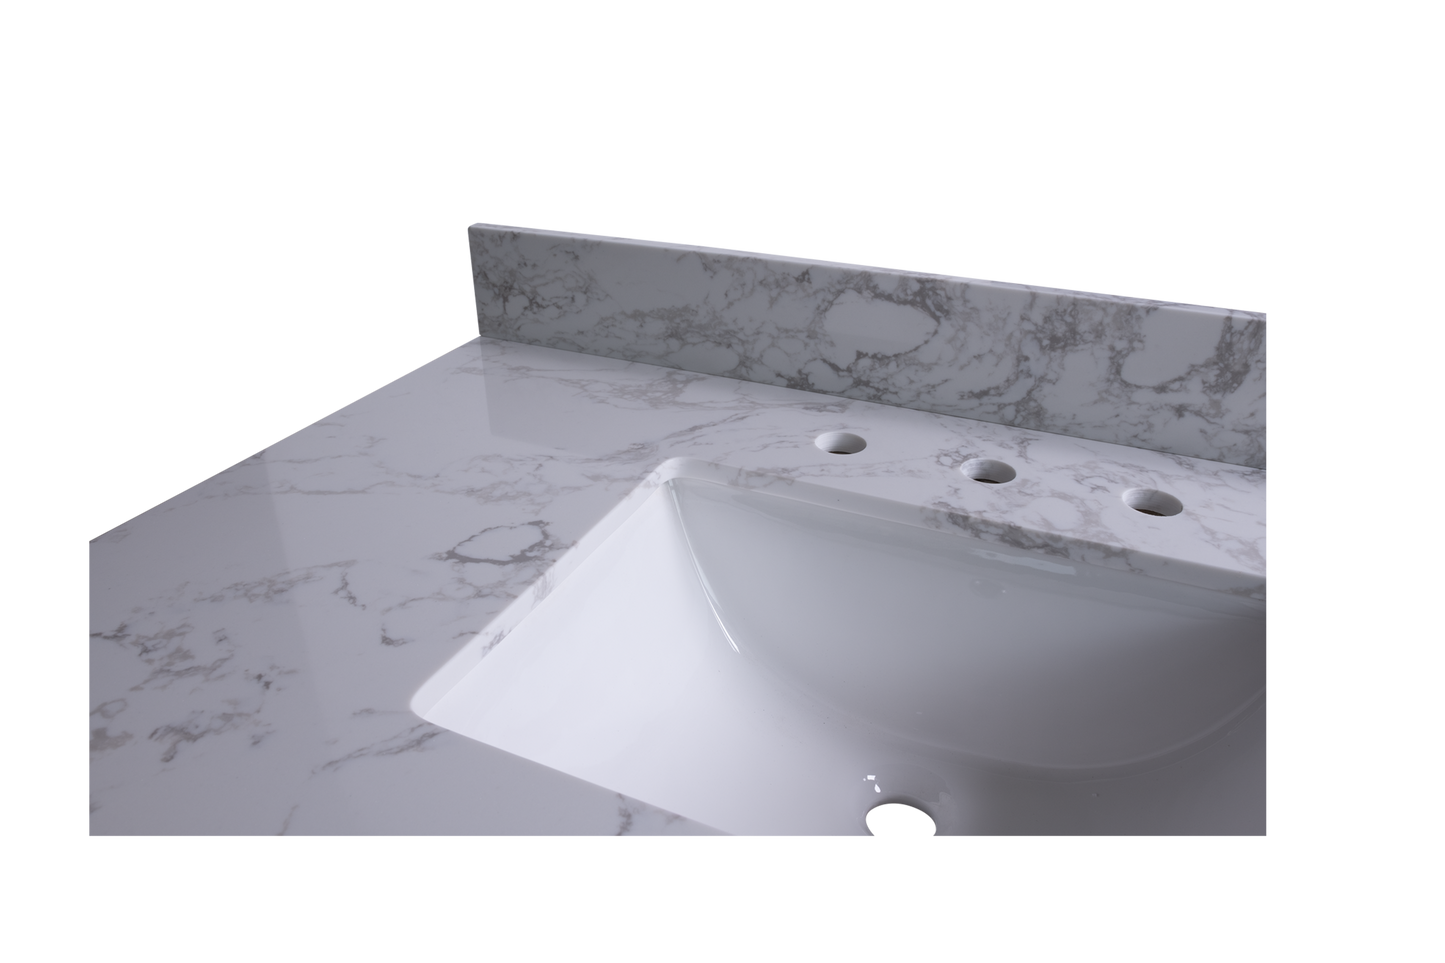 Montary 43" carrara white engineered stone vanity top backsplash